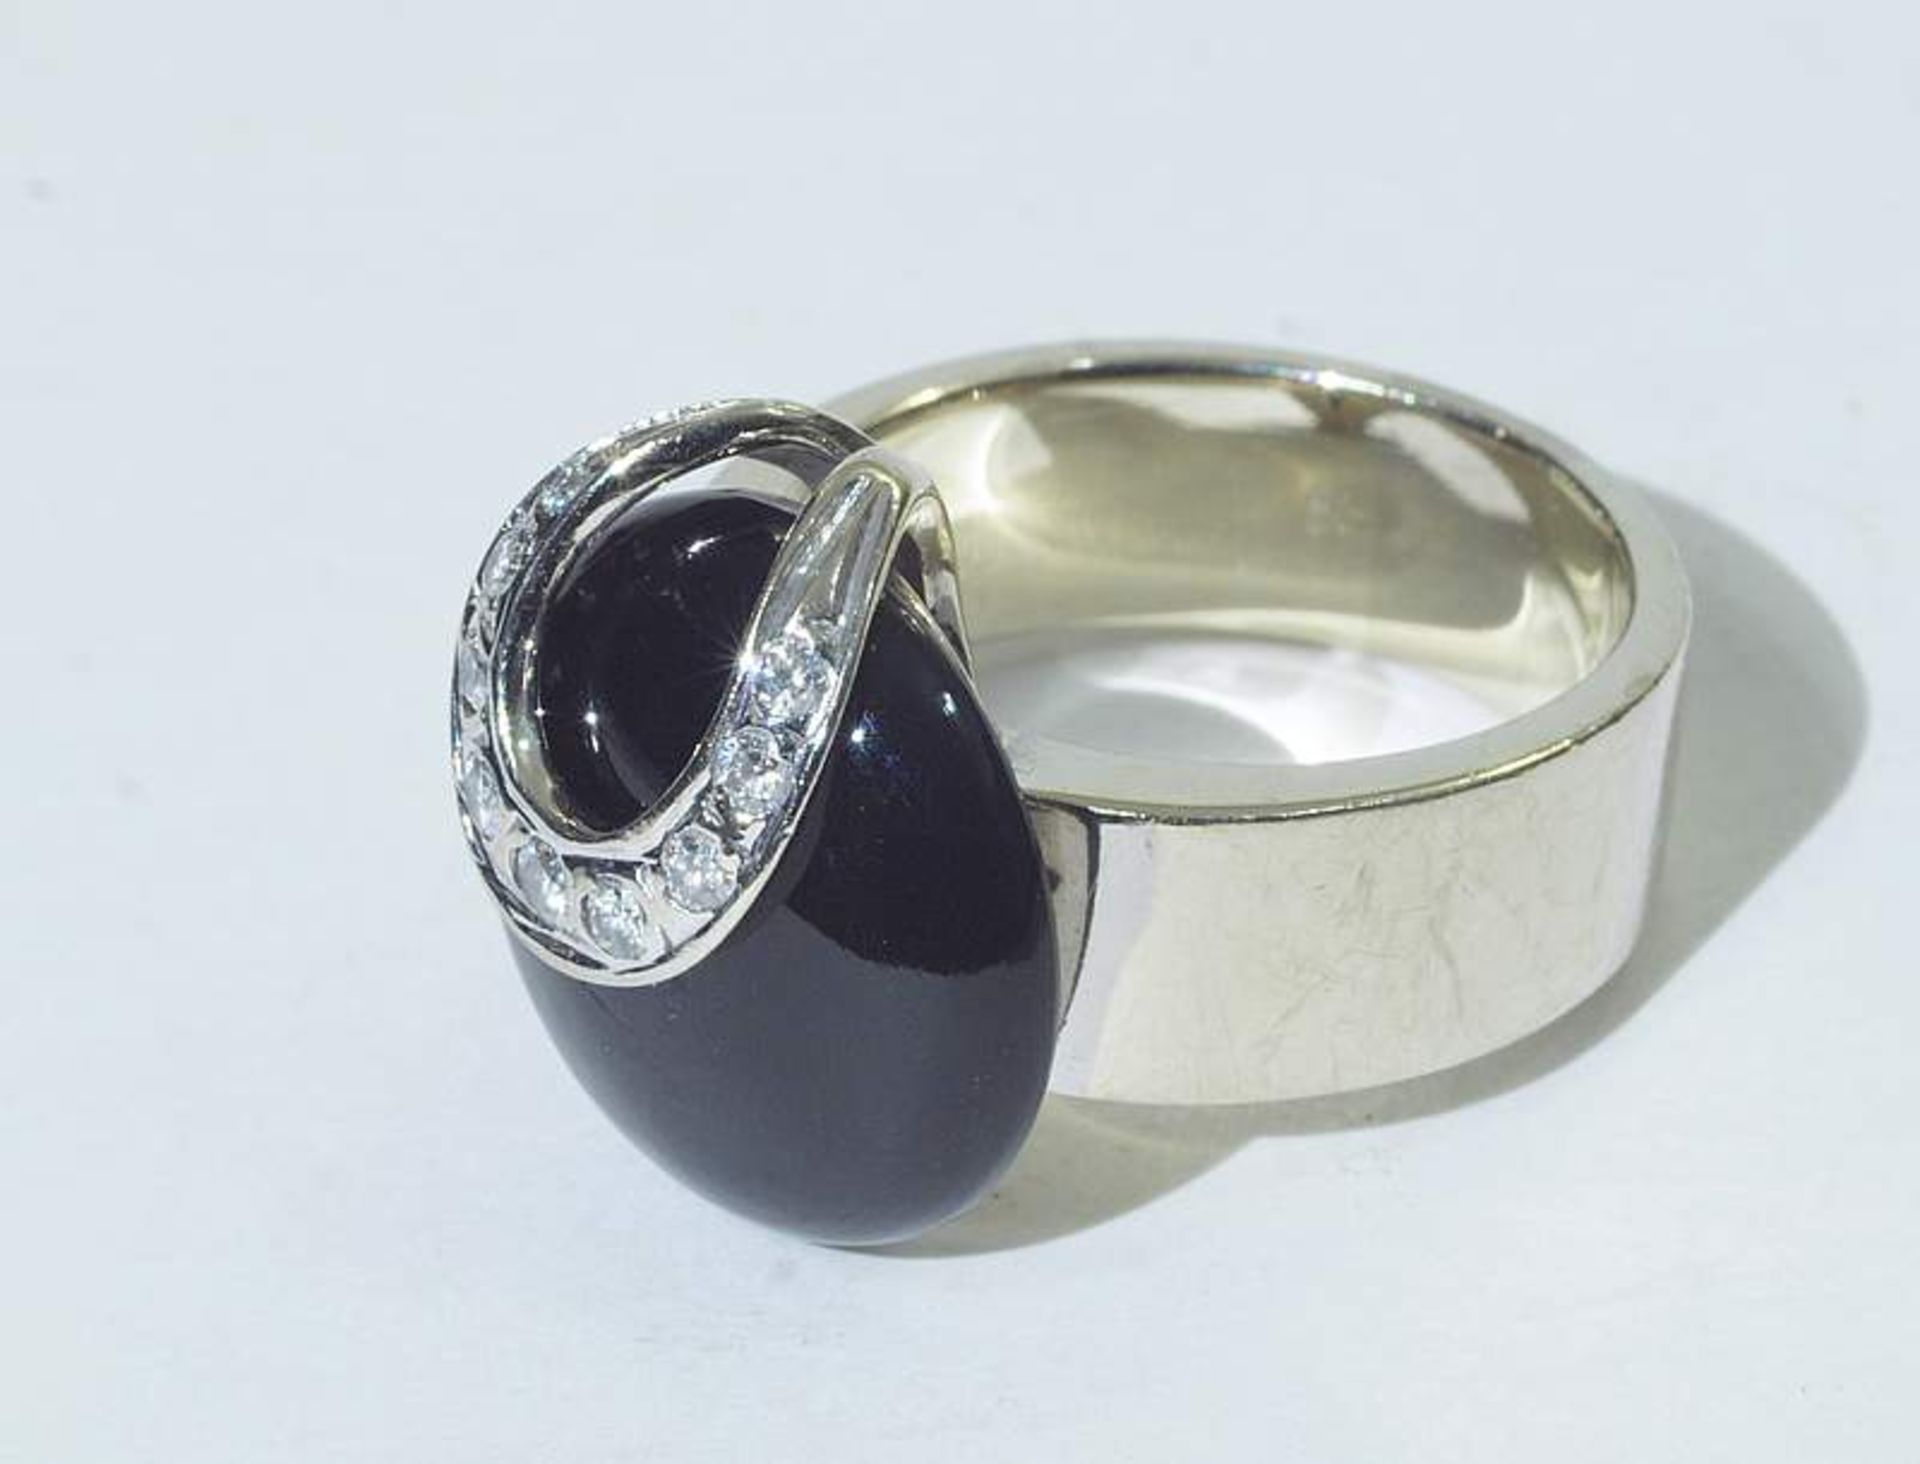 Massiver Ring mit Onyx und Brillanten. Massiver Ring mit Onyx und Brillanten. 585er Weißgold. - Bild 4 aus 5